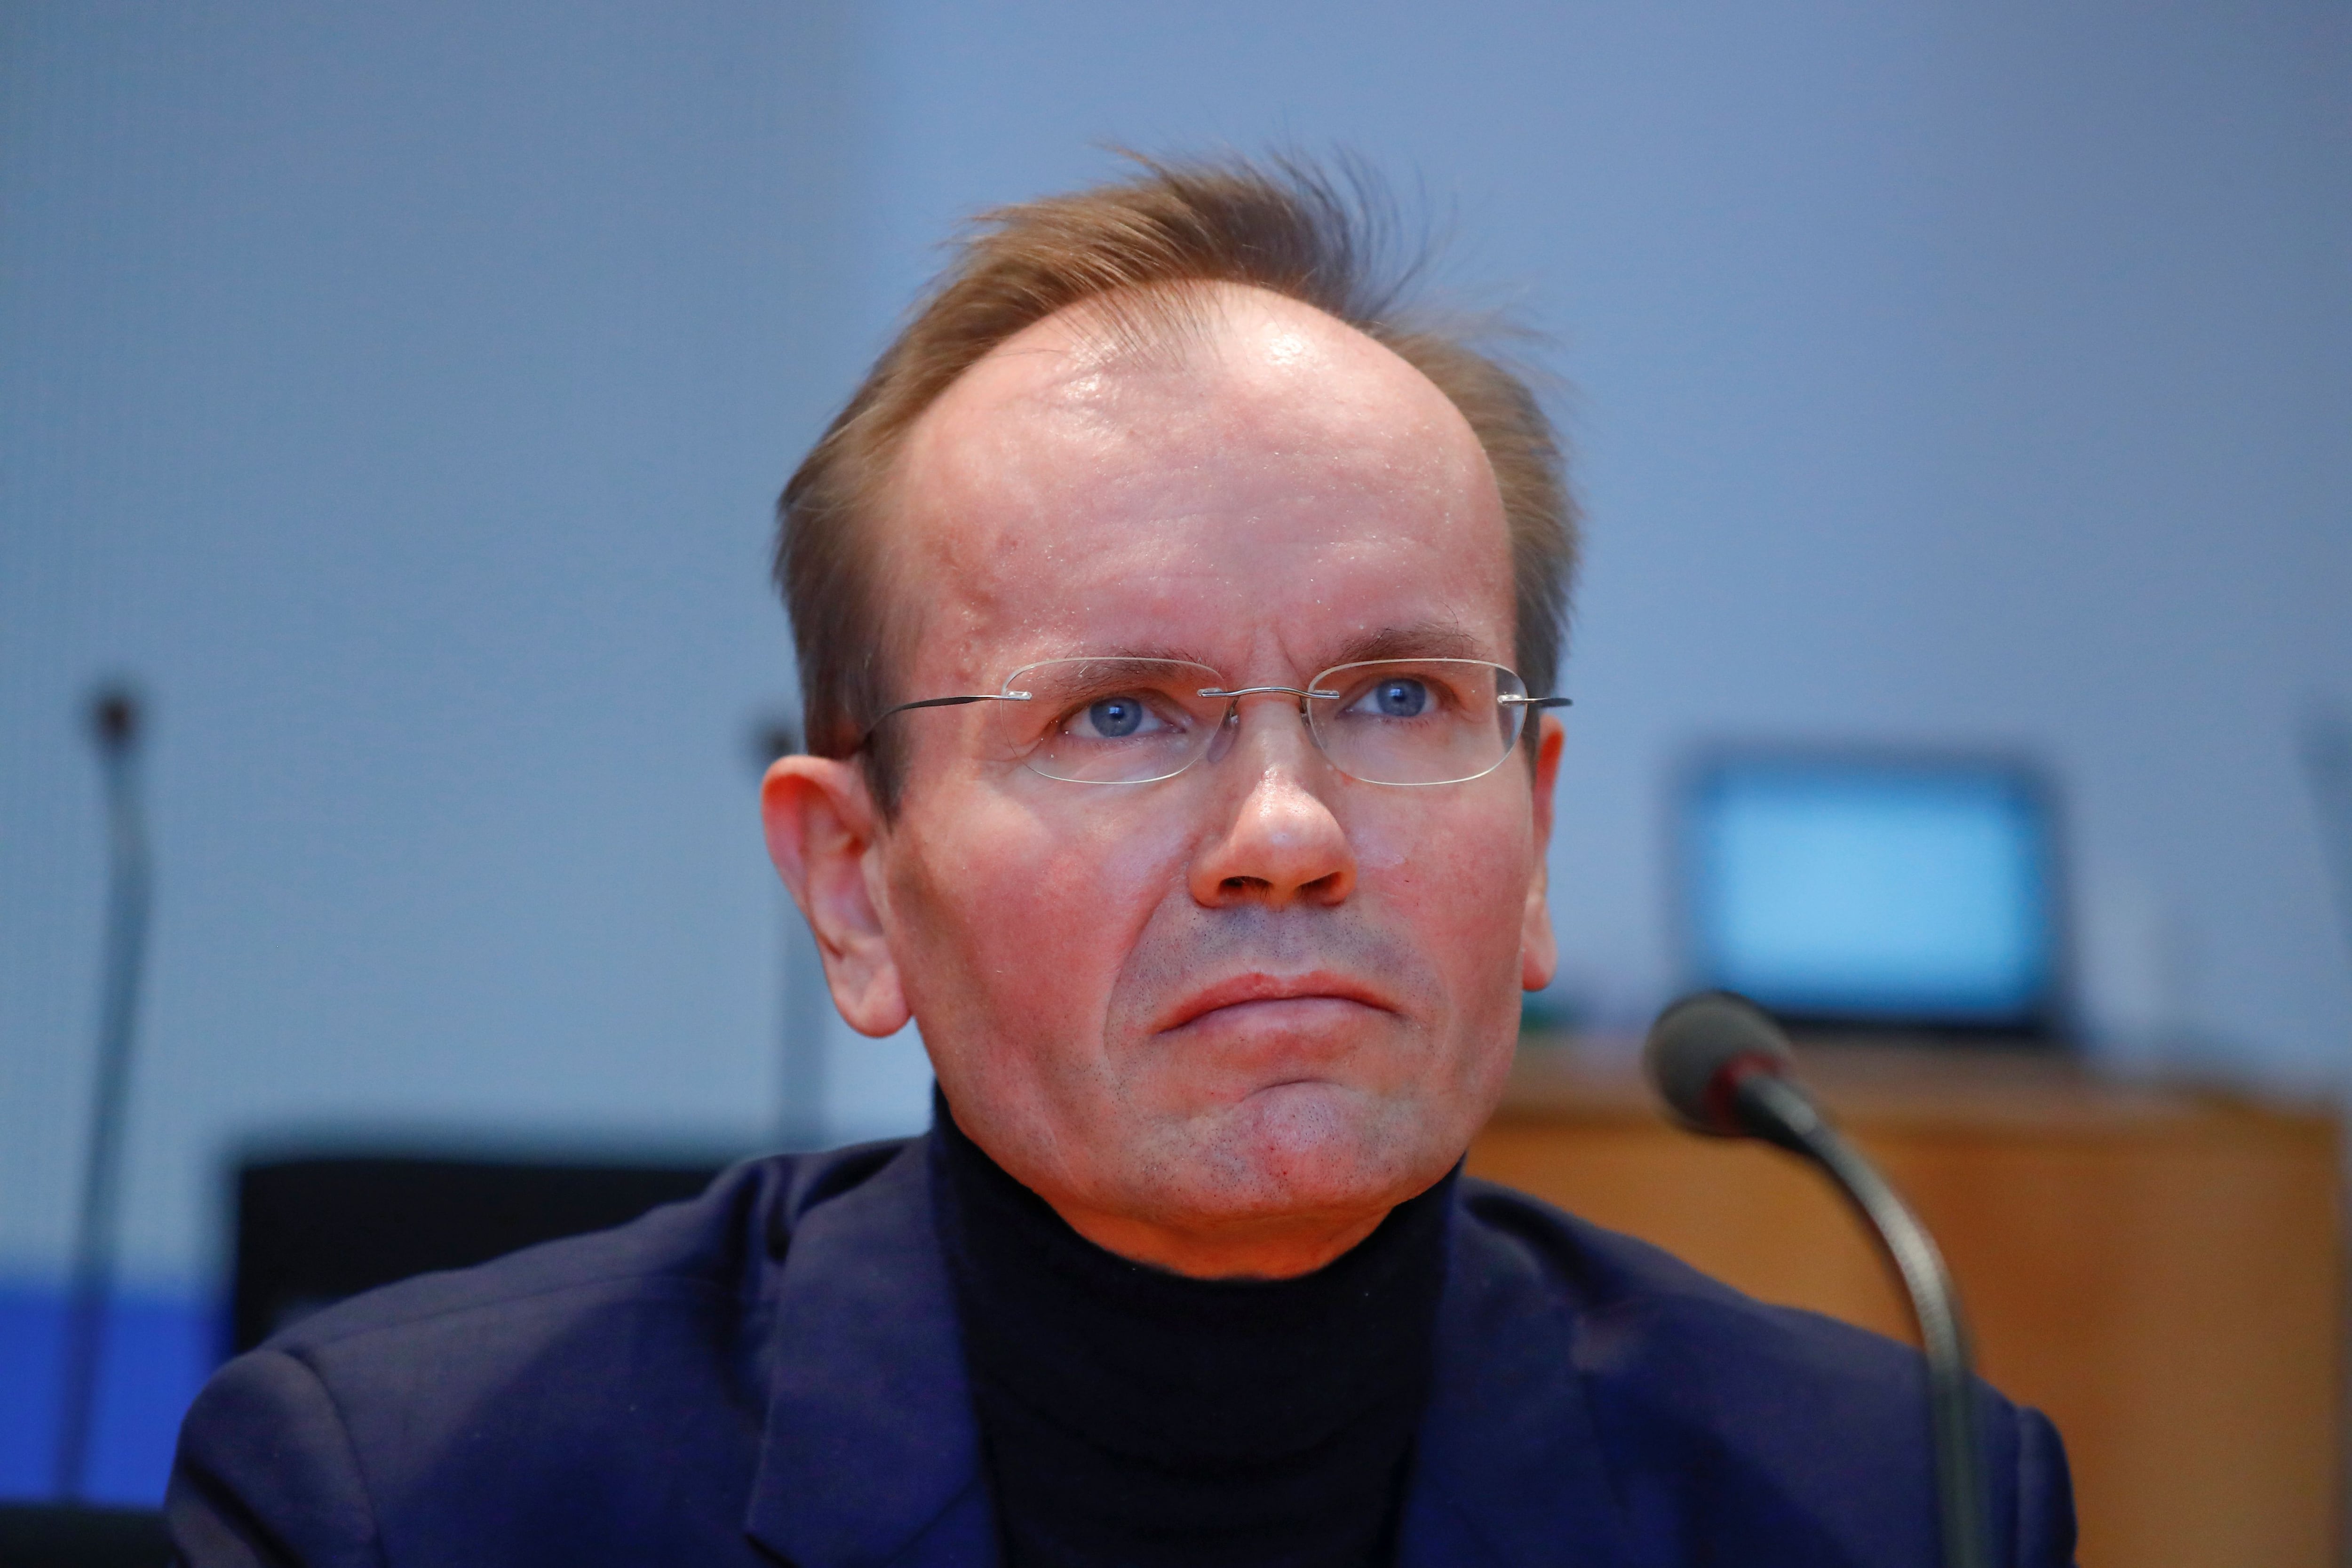 El ex CEO de WIrecar Markus Braun durante una audiencia ante el parlamento alemán (REUTERS/Fabrizio Bensch)